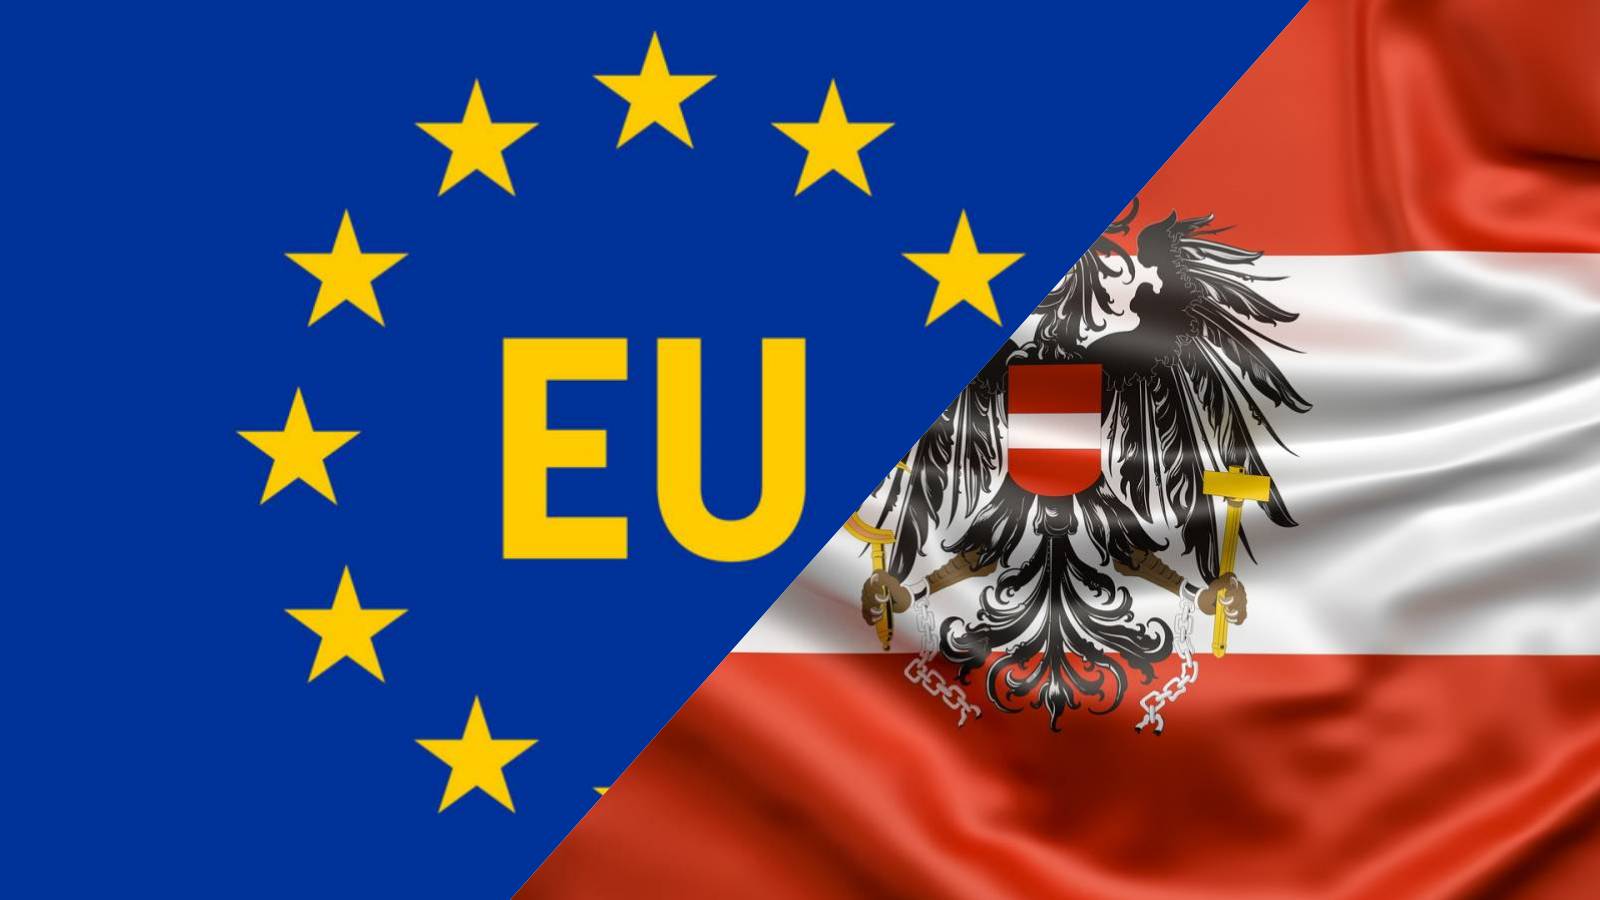 Østrig har ingen problemer Rumæniens tiltrædelse af Schengen Den store udmelding, Europa har givet